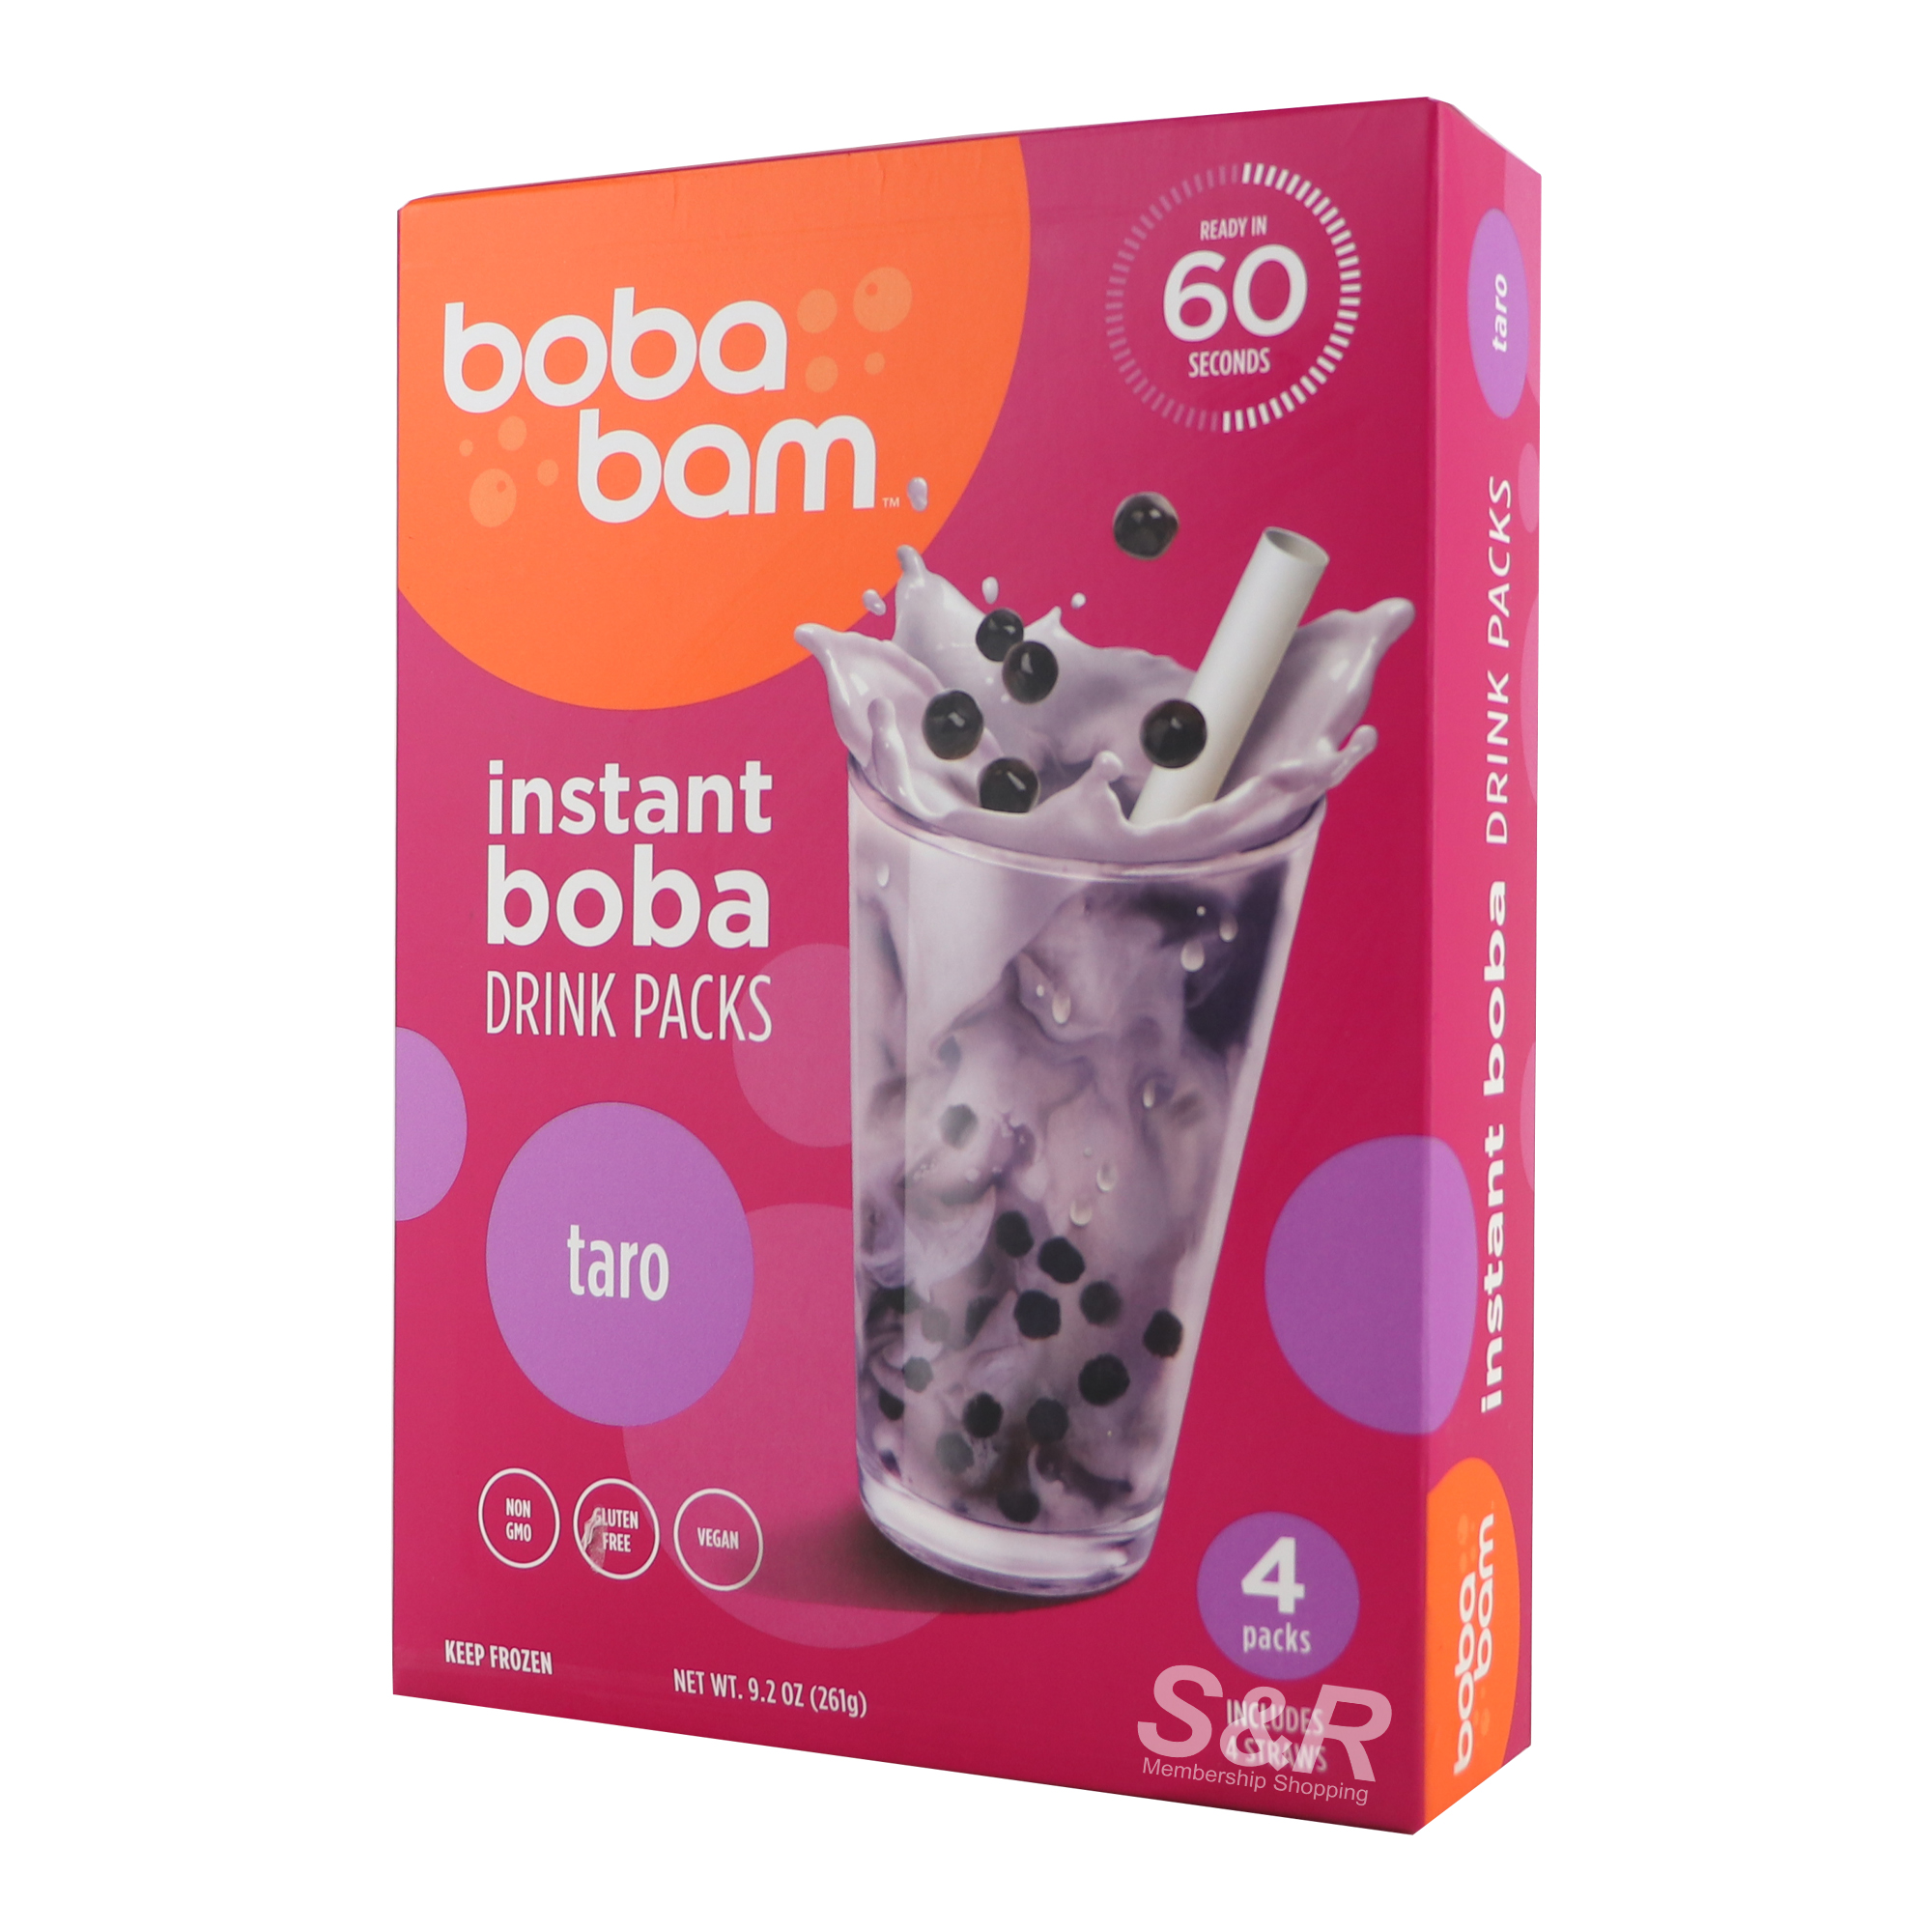 Boba Bam Taro 4 packs